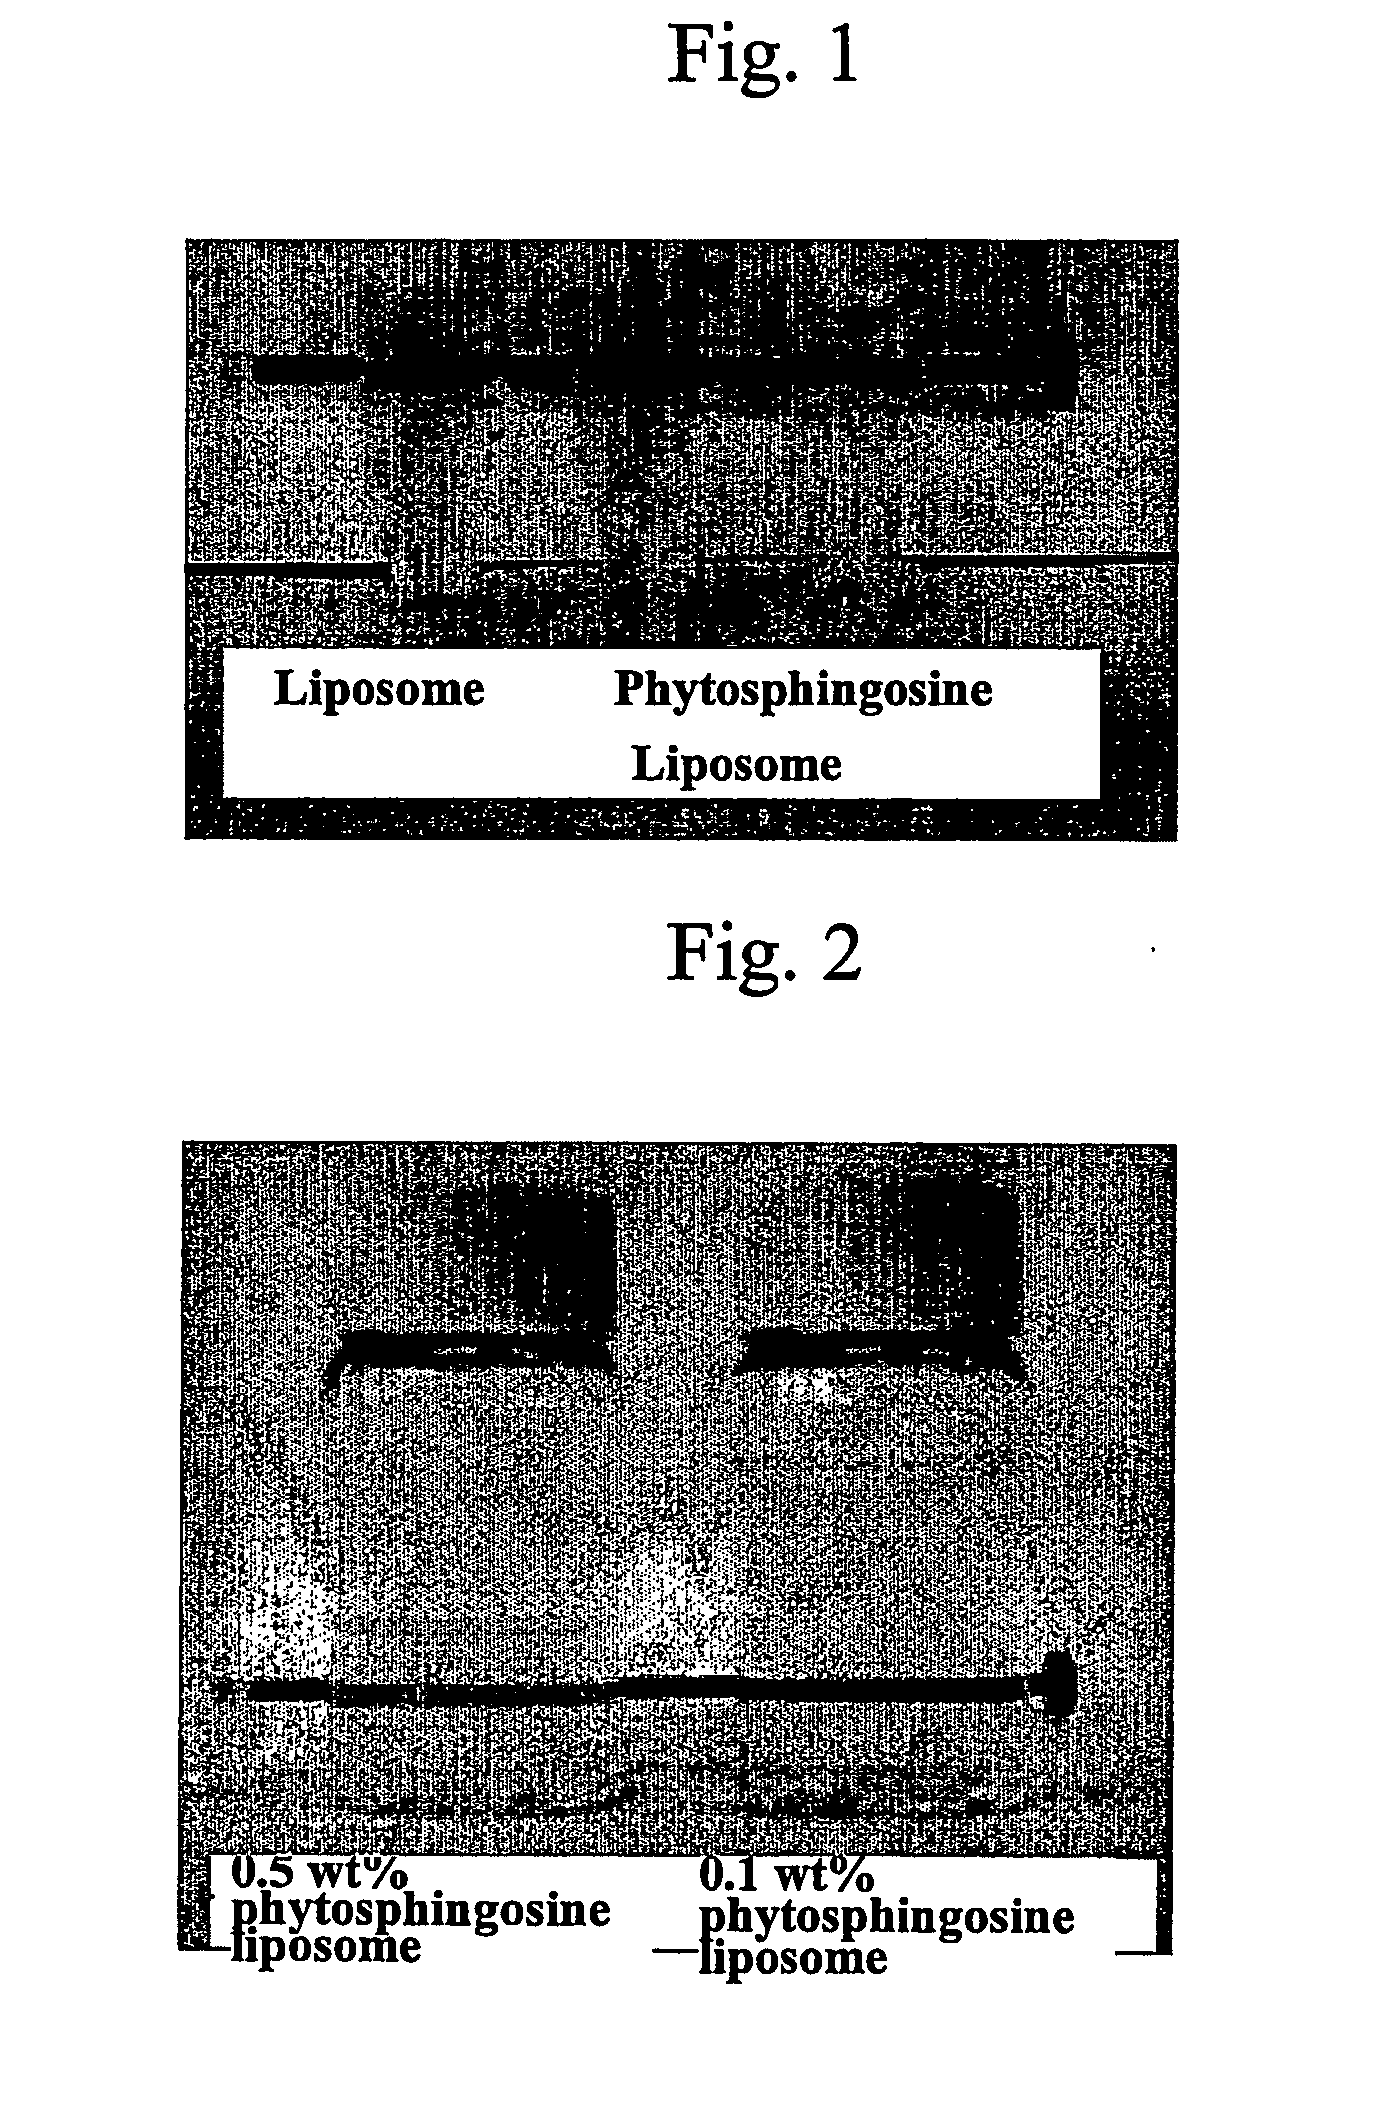 Method for preparing phytosphingosine liposome composition